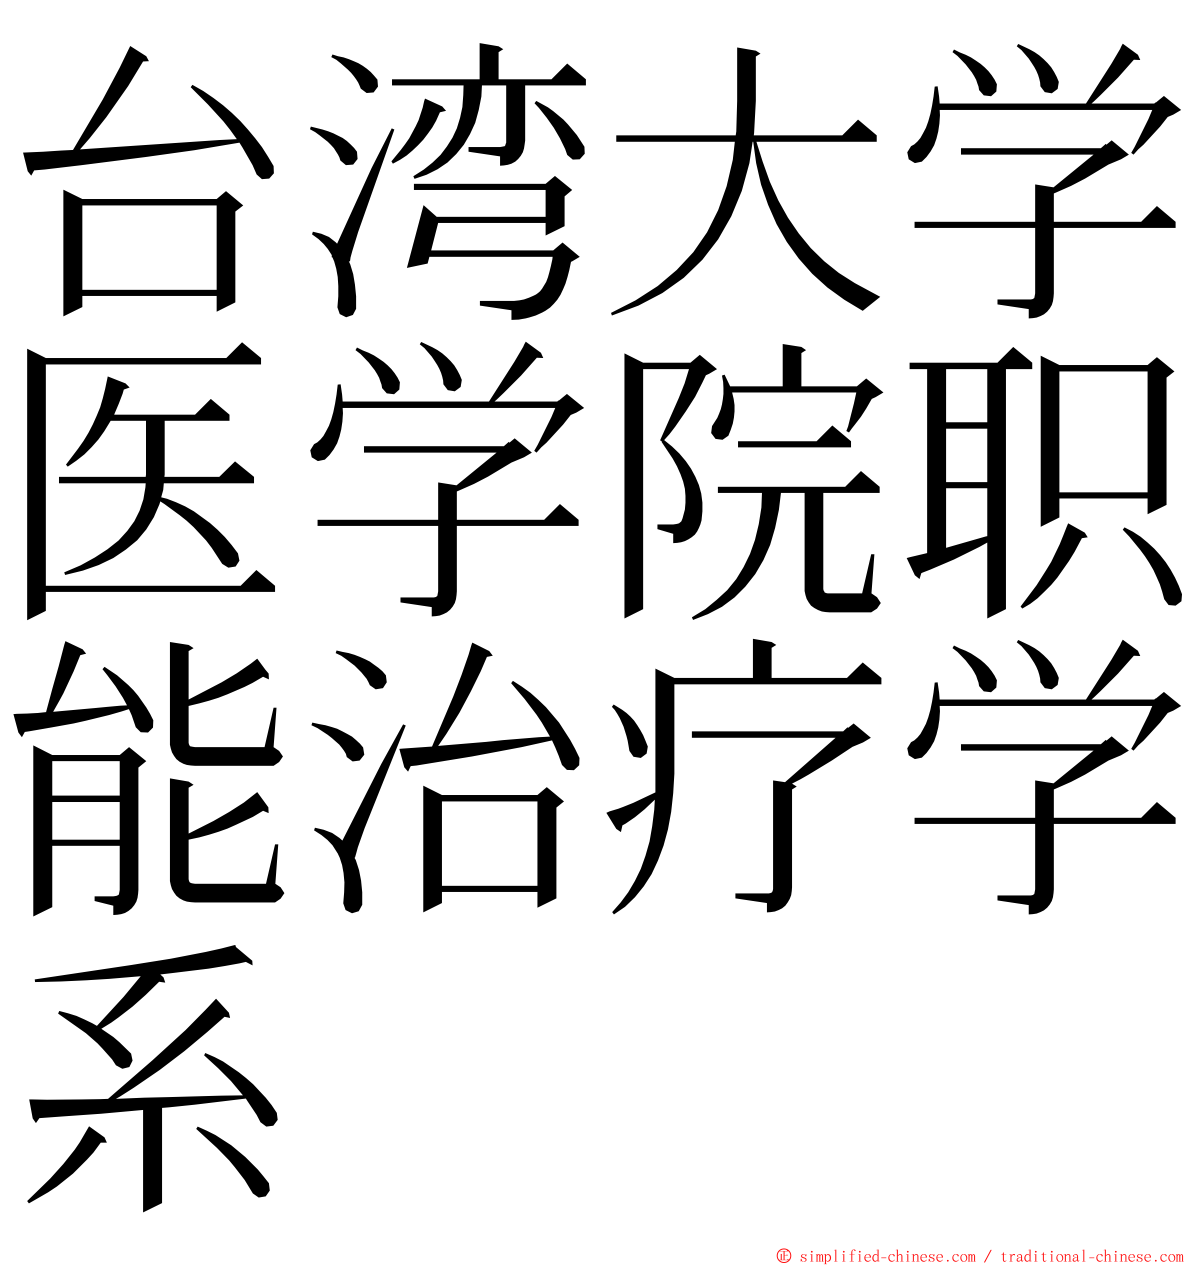 台湾大学医学院职能治疗学系 ming font